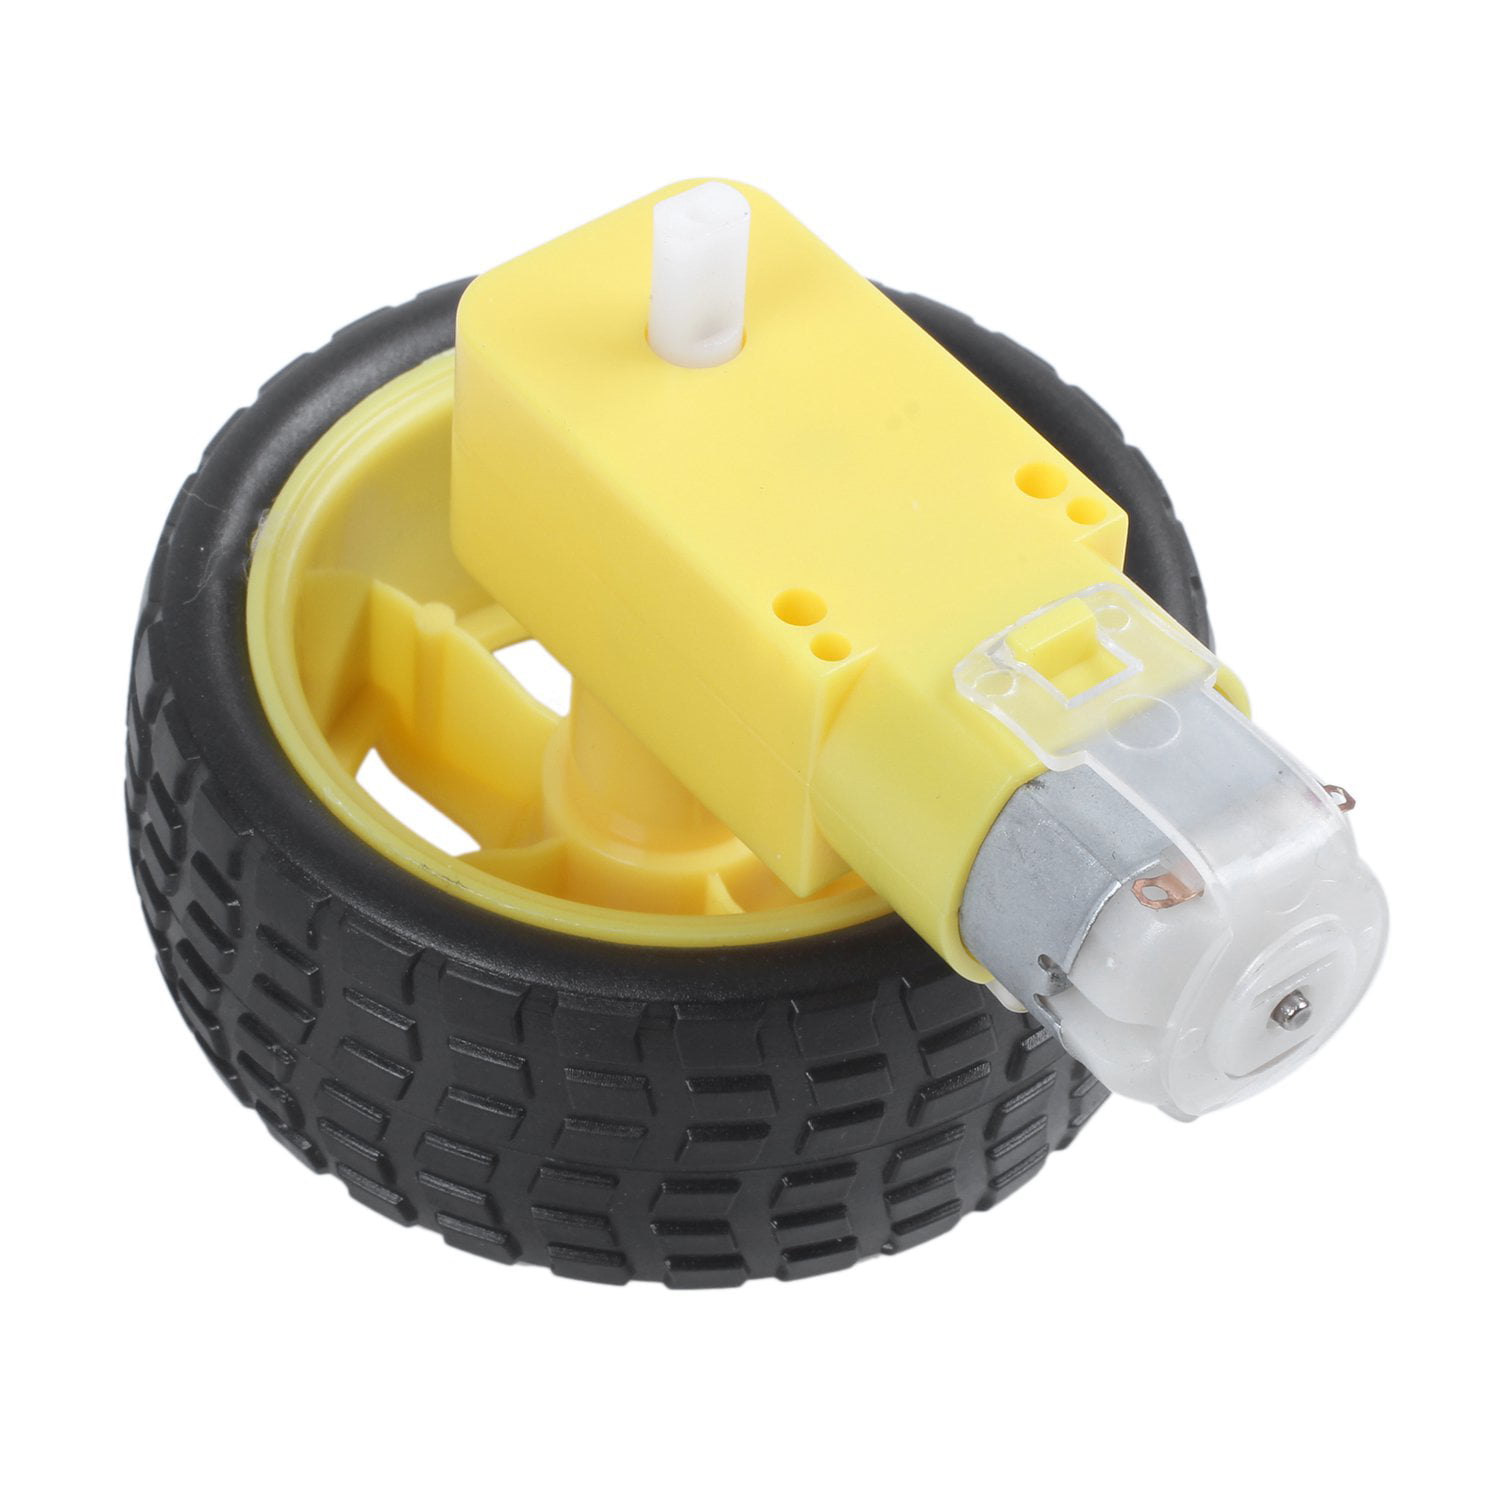 Smart Car Auto Rad Reifen Tire Wheel DC 3-6V Motor Gear für Arduino Robot